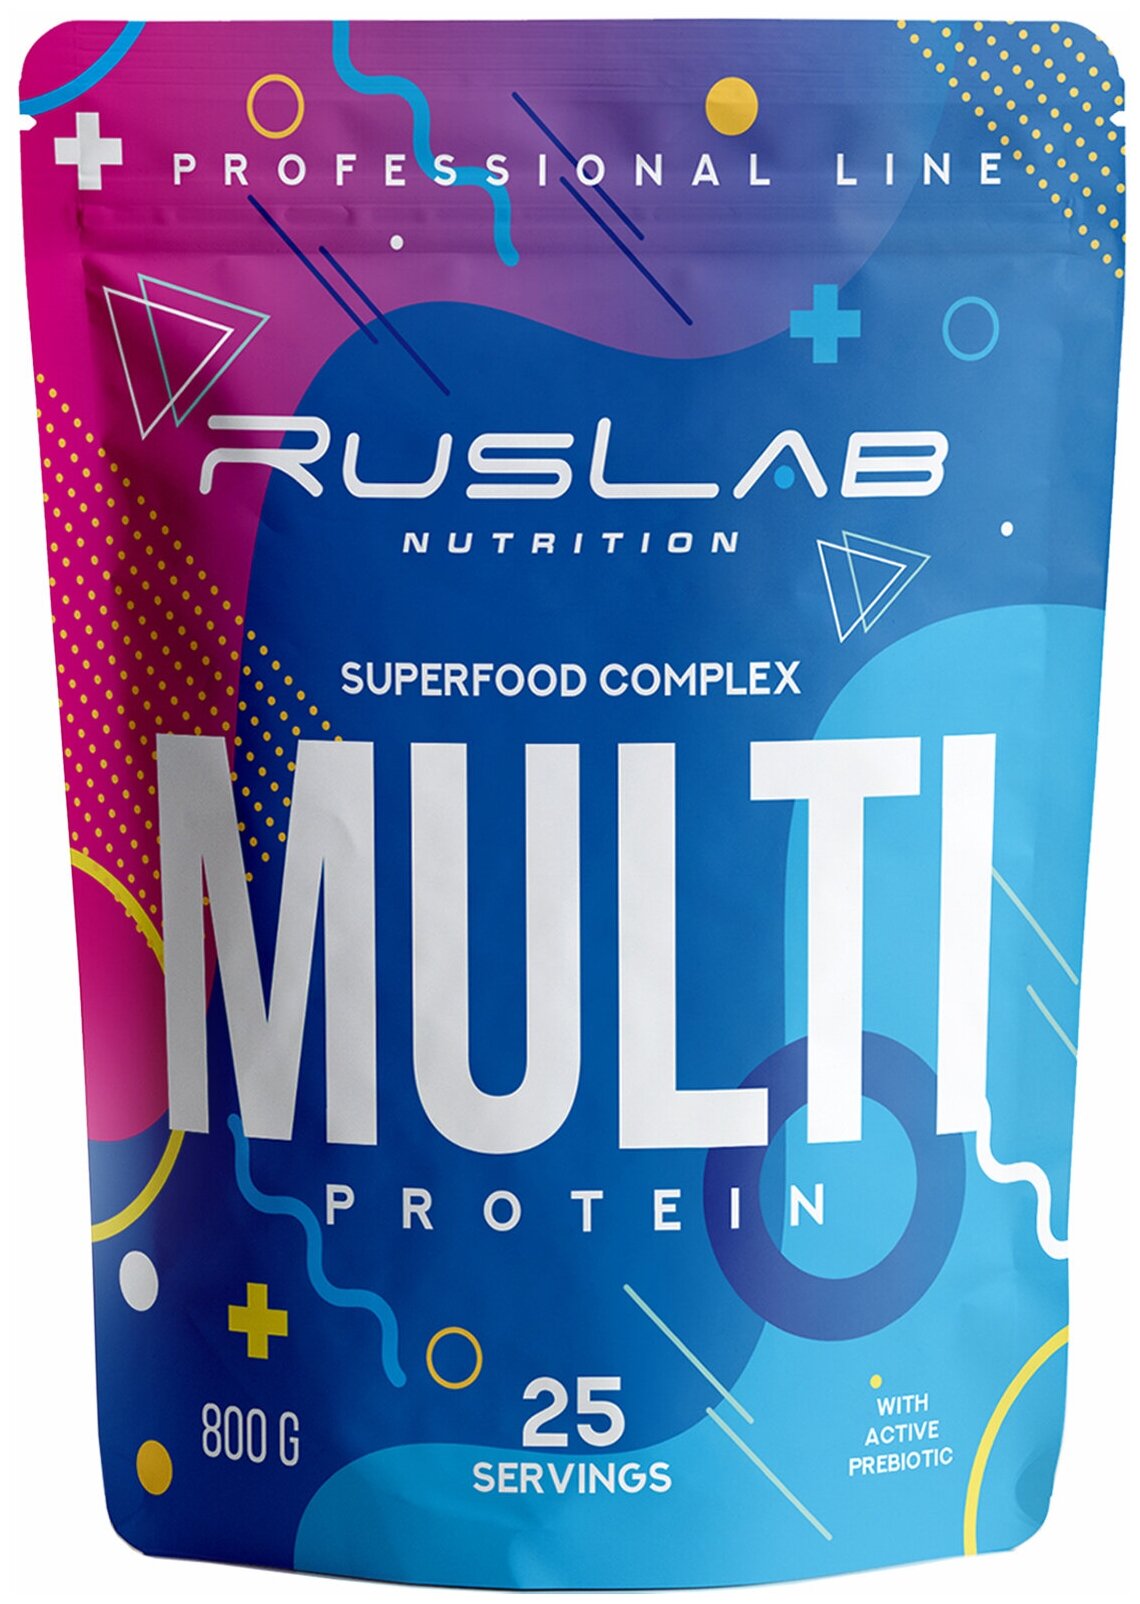 Многокомпонентный протеин MULTI PROTEIN, белковый коктейль для похудения (800 гр), вкус имбирный пряник